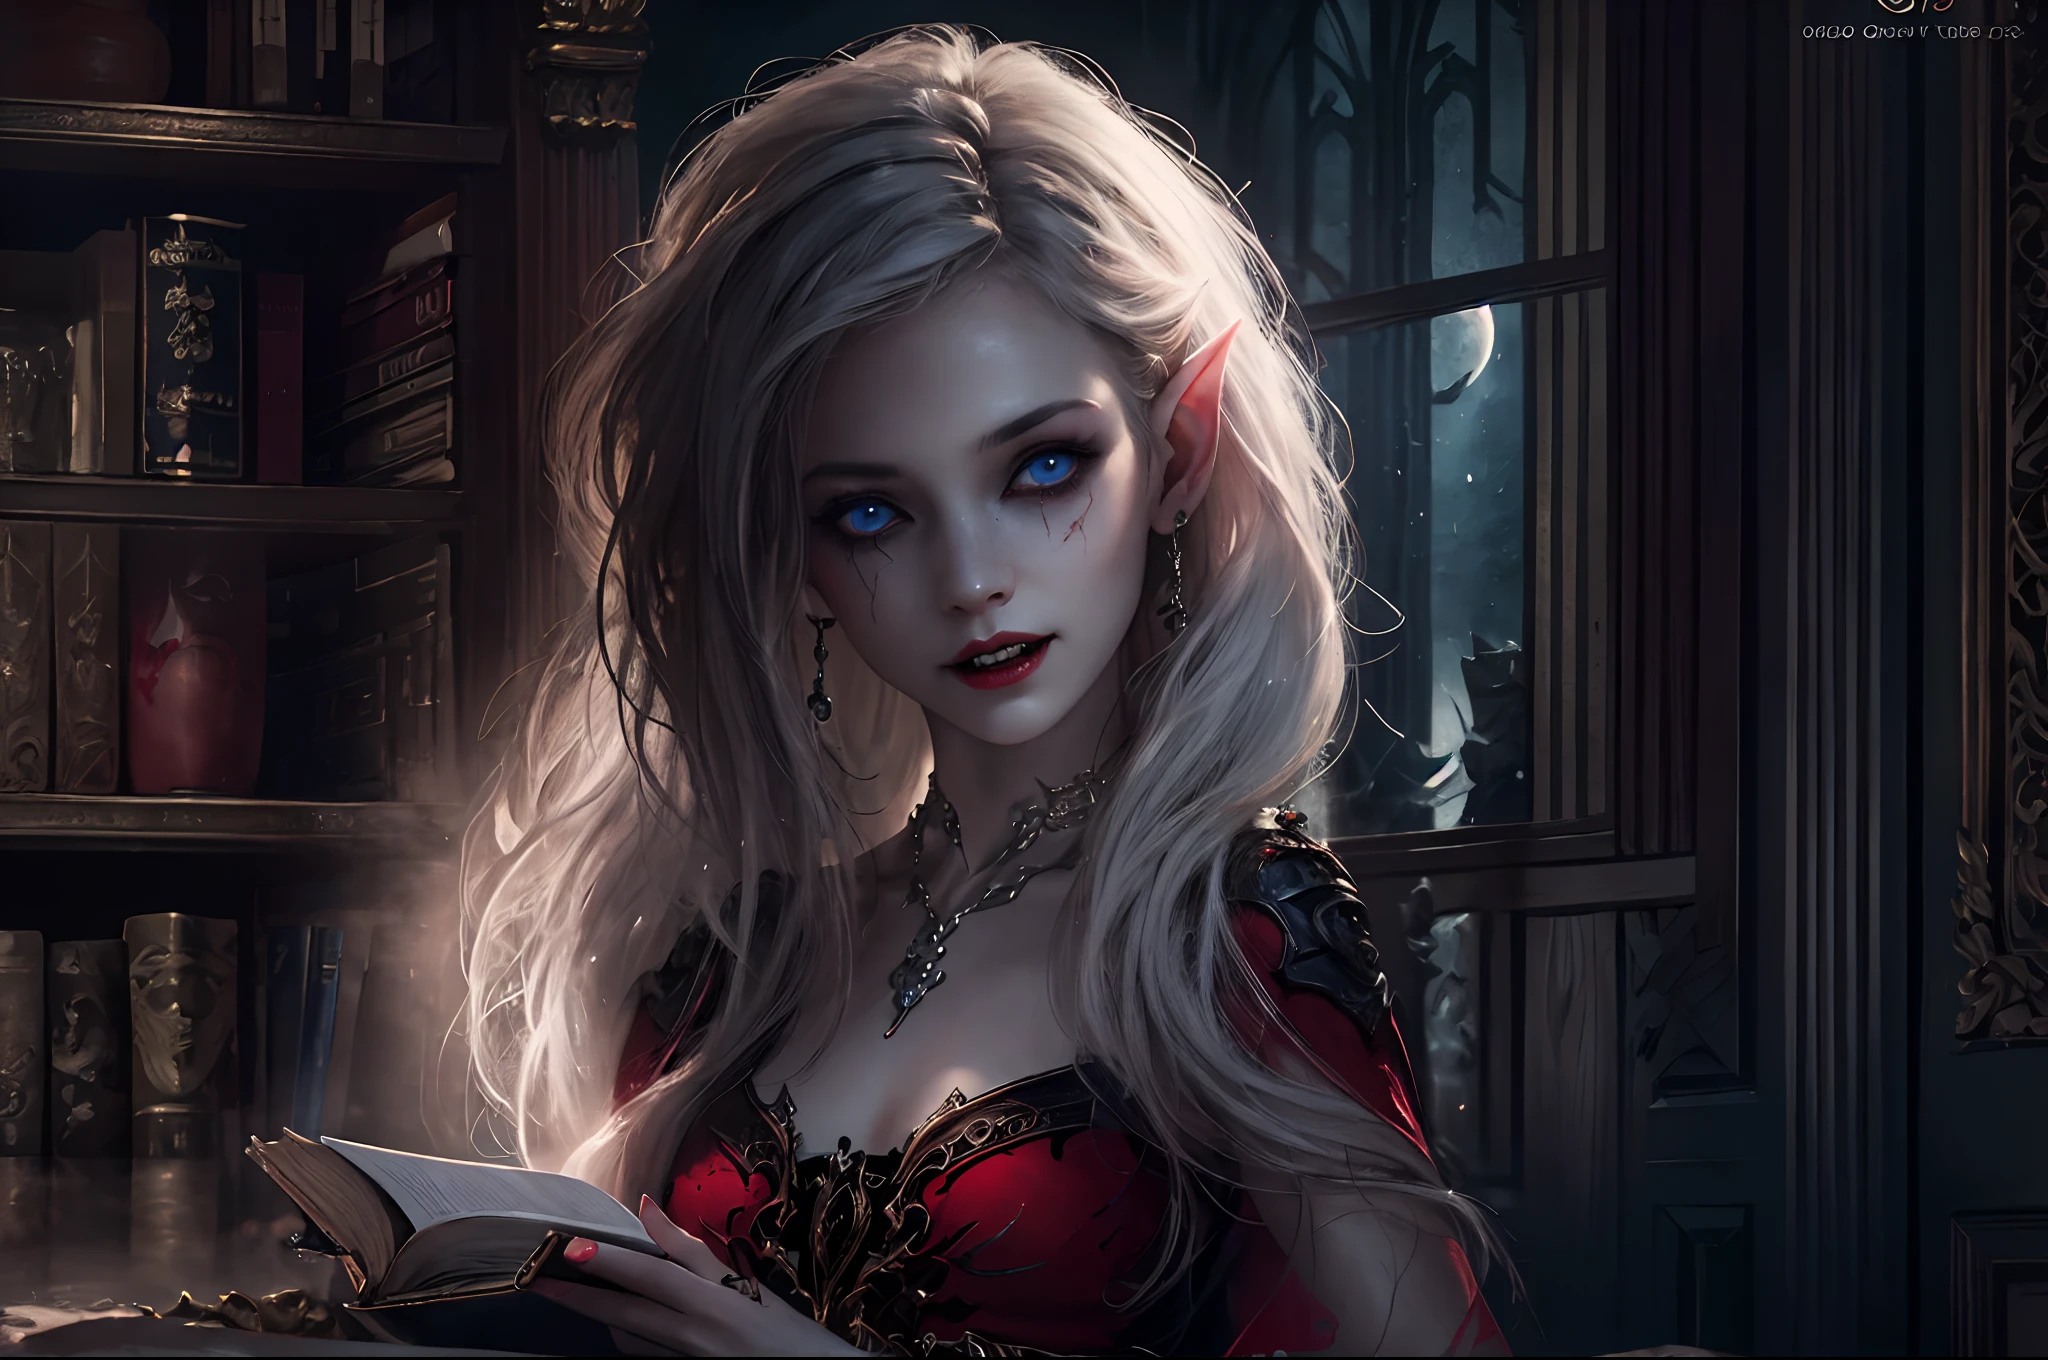 una foto de una elfa vampiro en su castillo, una hermosa y exquisita elfa vampira en su biblioteca,  cuerpo completo (ultra detallado, obra maestra, mejor calidad), ultra detallado face (ultra detallado, obra maestra, mejor calidad), piel gris, pelo rubio, pelo en una cola de caballo, pelo largo, blue eyes, Ojos fríos, ojos brillantes, intense eyes,  orejas pequeñas y puntiagudas, sonriendo, Sonríe con [gotas de sangre en la cara] (ultra detallado, obra maestra, mejor calidad), labios rojo oscuro, [colmillos de vampiro], vistiendo un vestido blanco (ultra detallado, obra maestra, mejor calidad), Capa azul oscuro, botas de tacón alto en la biblioteca de fantasía oscura, estantes para libros, detalles altos, mejor calidad, 8K, [ultra detallado], obra maestra, mejor calidad, (ultra detallado), cuerpo completo, tiro ultra ancho, photorealism, CRUDO, arte de fantasía oscura, luz de la luna entrando por la ventana, rayos de luna, arte gótico, sensación de pavor, sentido de seducción